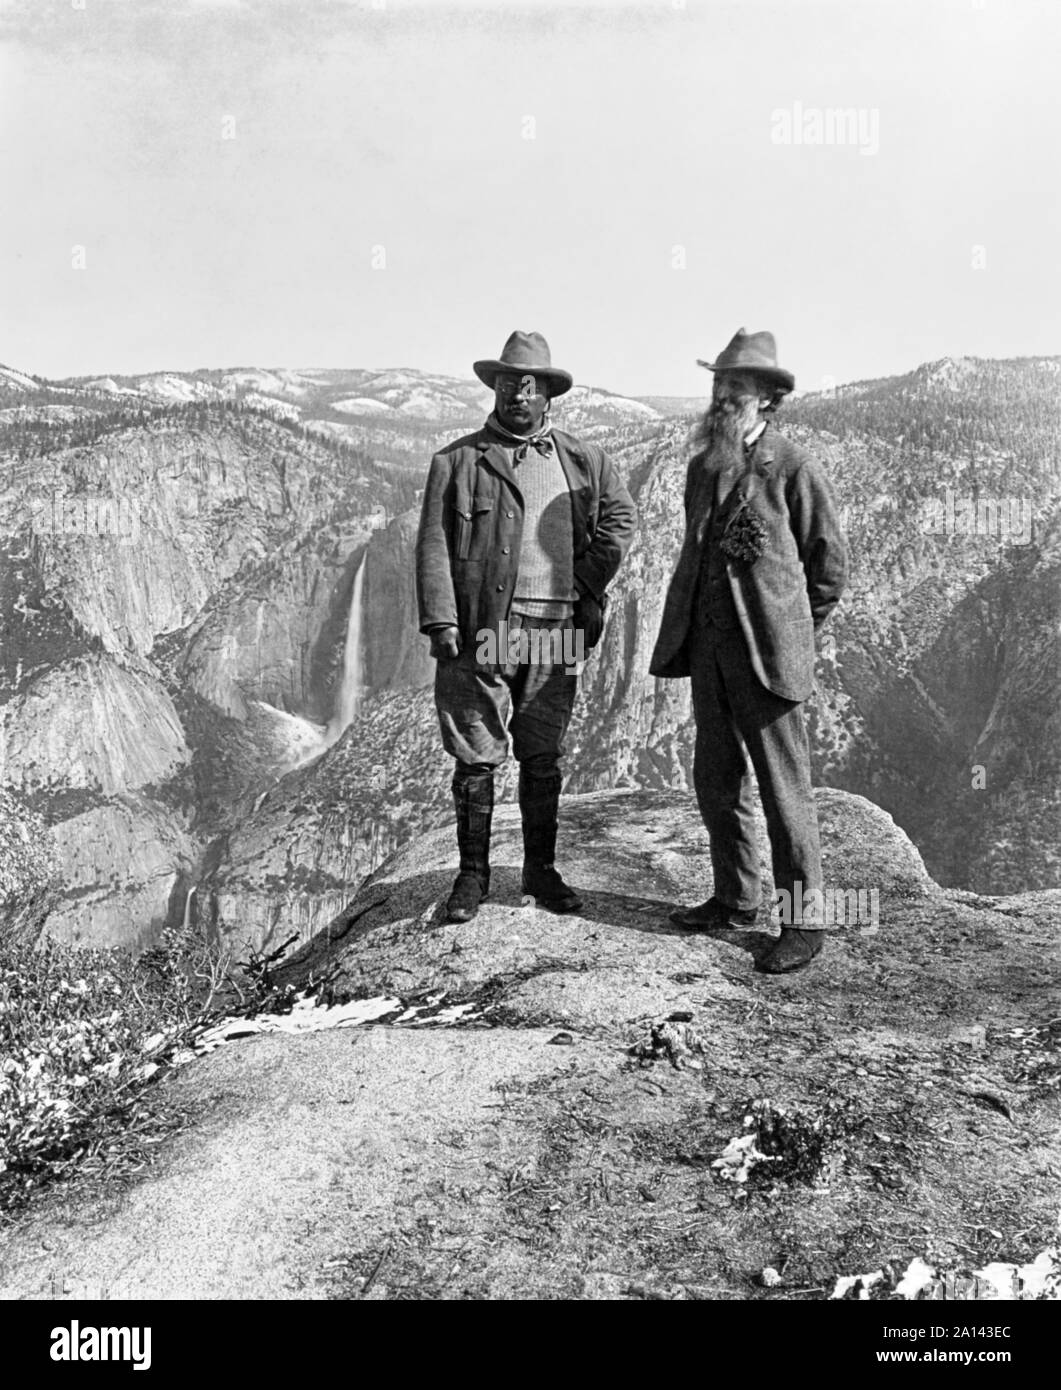 Le président Theodore Roosevelt (1858-1919) et naturaliste John Muir (1838-1914) Comité permanent sur Glacier Point dans la vallée de Yosemite, Californie en 1903 pendant un voyage de camping. Muir's passion pour la préservation d'espaces naturels aux États-Unis véhiculée à travers ses écrits ont contribué à la création de l'US National Park Service en 1916. Banque D'Images